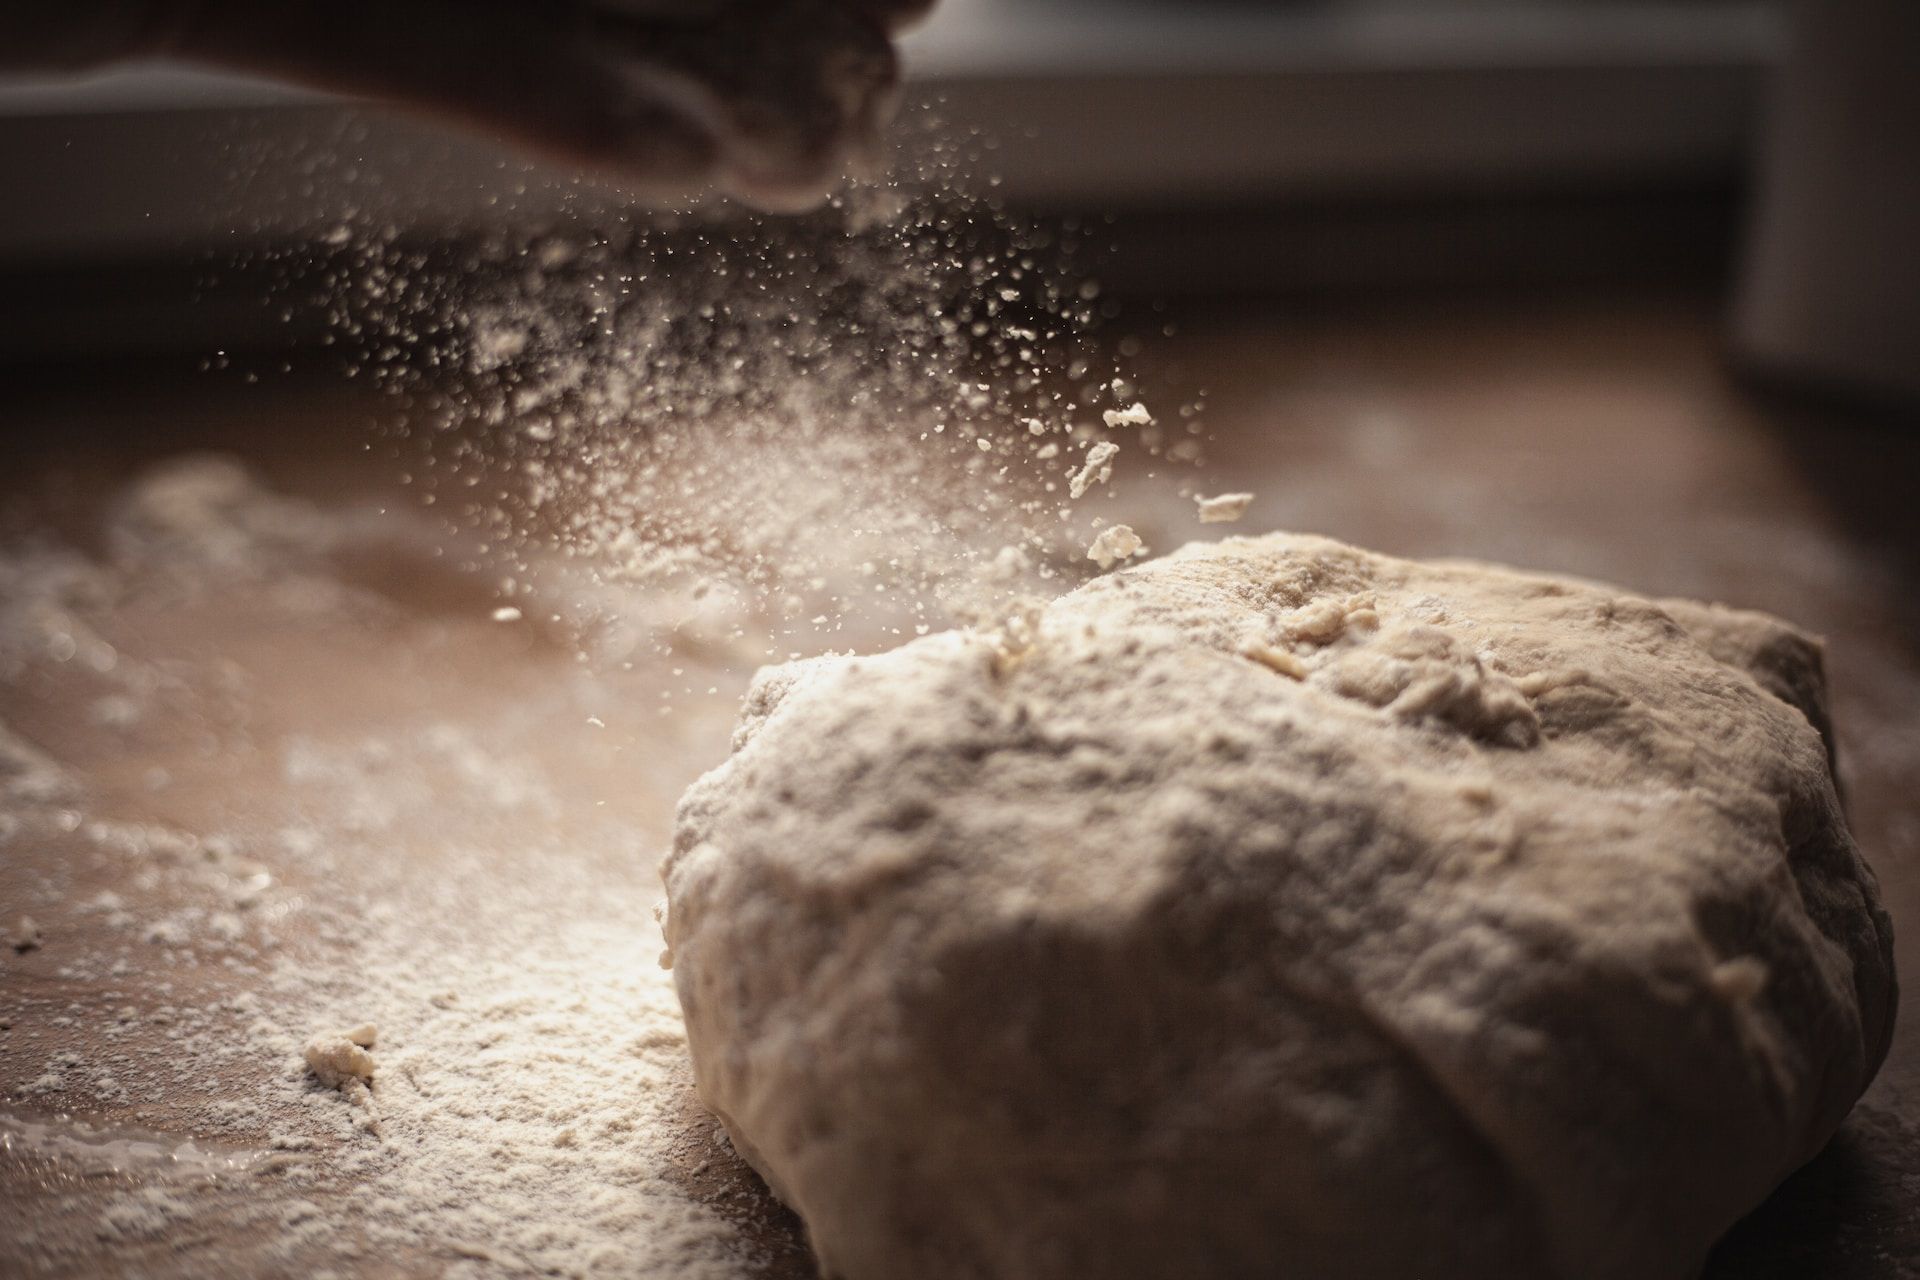 pâte à pain et levain - Photo de Duncan Kidd sur https://unsplash.com/fr/photos/2HMPWWifKrs